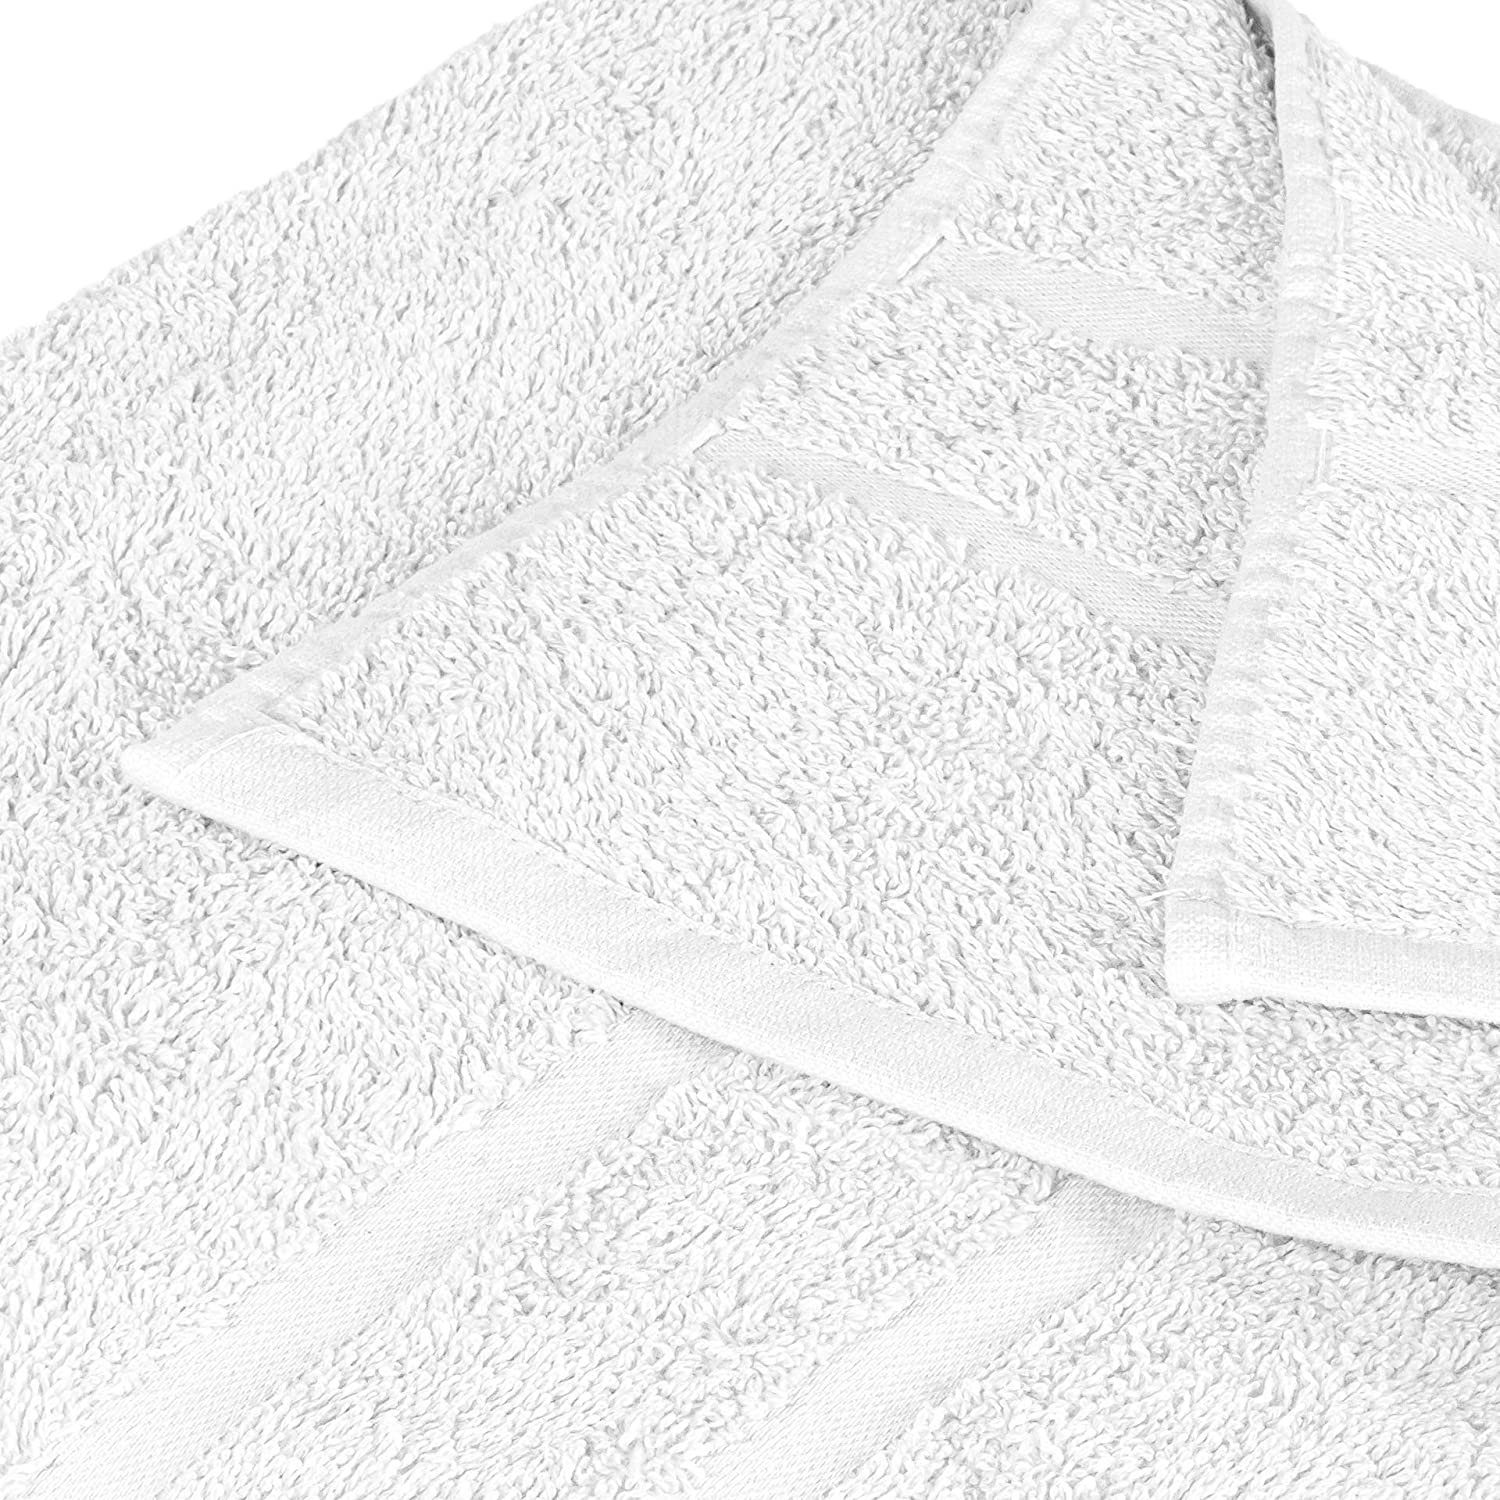 StickandShine Handtuch Set 500 1x 1x Duschtuch Handtuch Saunatuch 100% SET als Weiß Baumwolle 100% GSM Baumwolle Badetuch Pack, 1x Gästehandtuch verschiedenen 1x in 500 Farben Handtuch (5 5er Teilig) Frottee 1x GSM